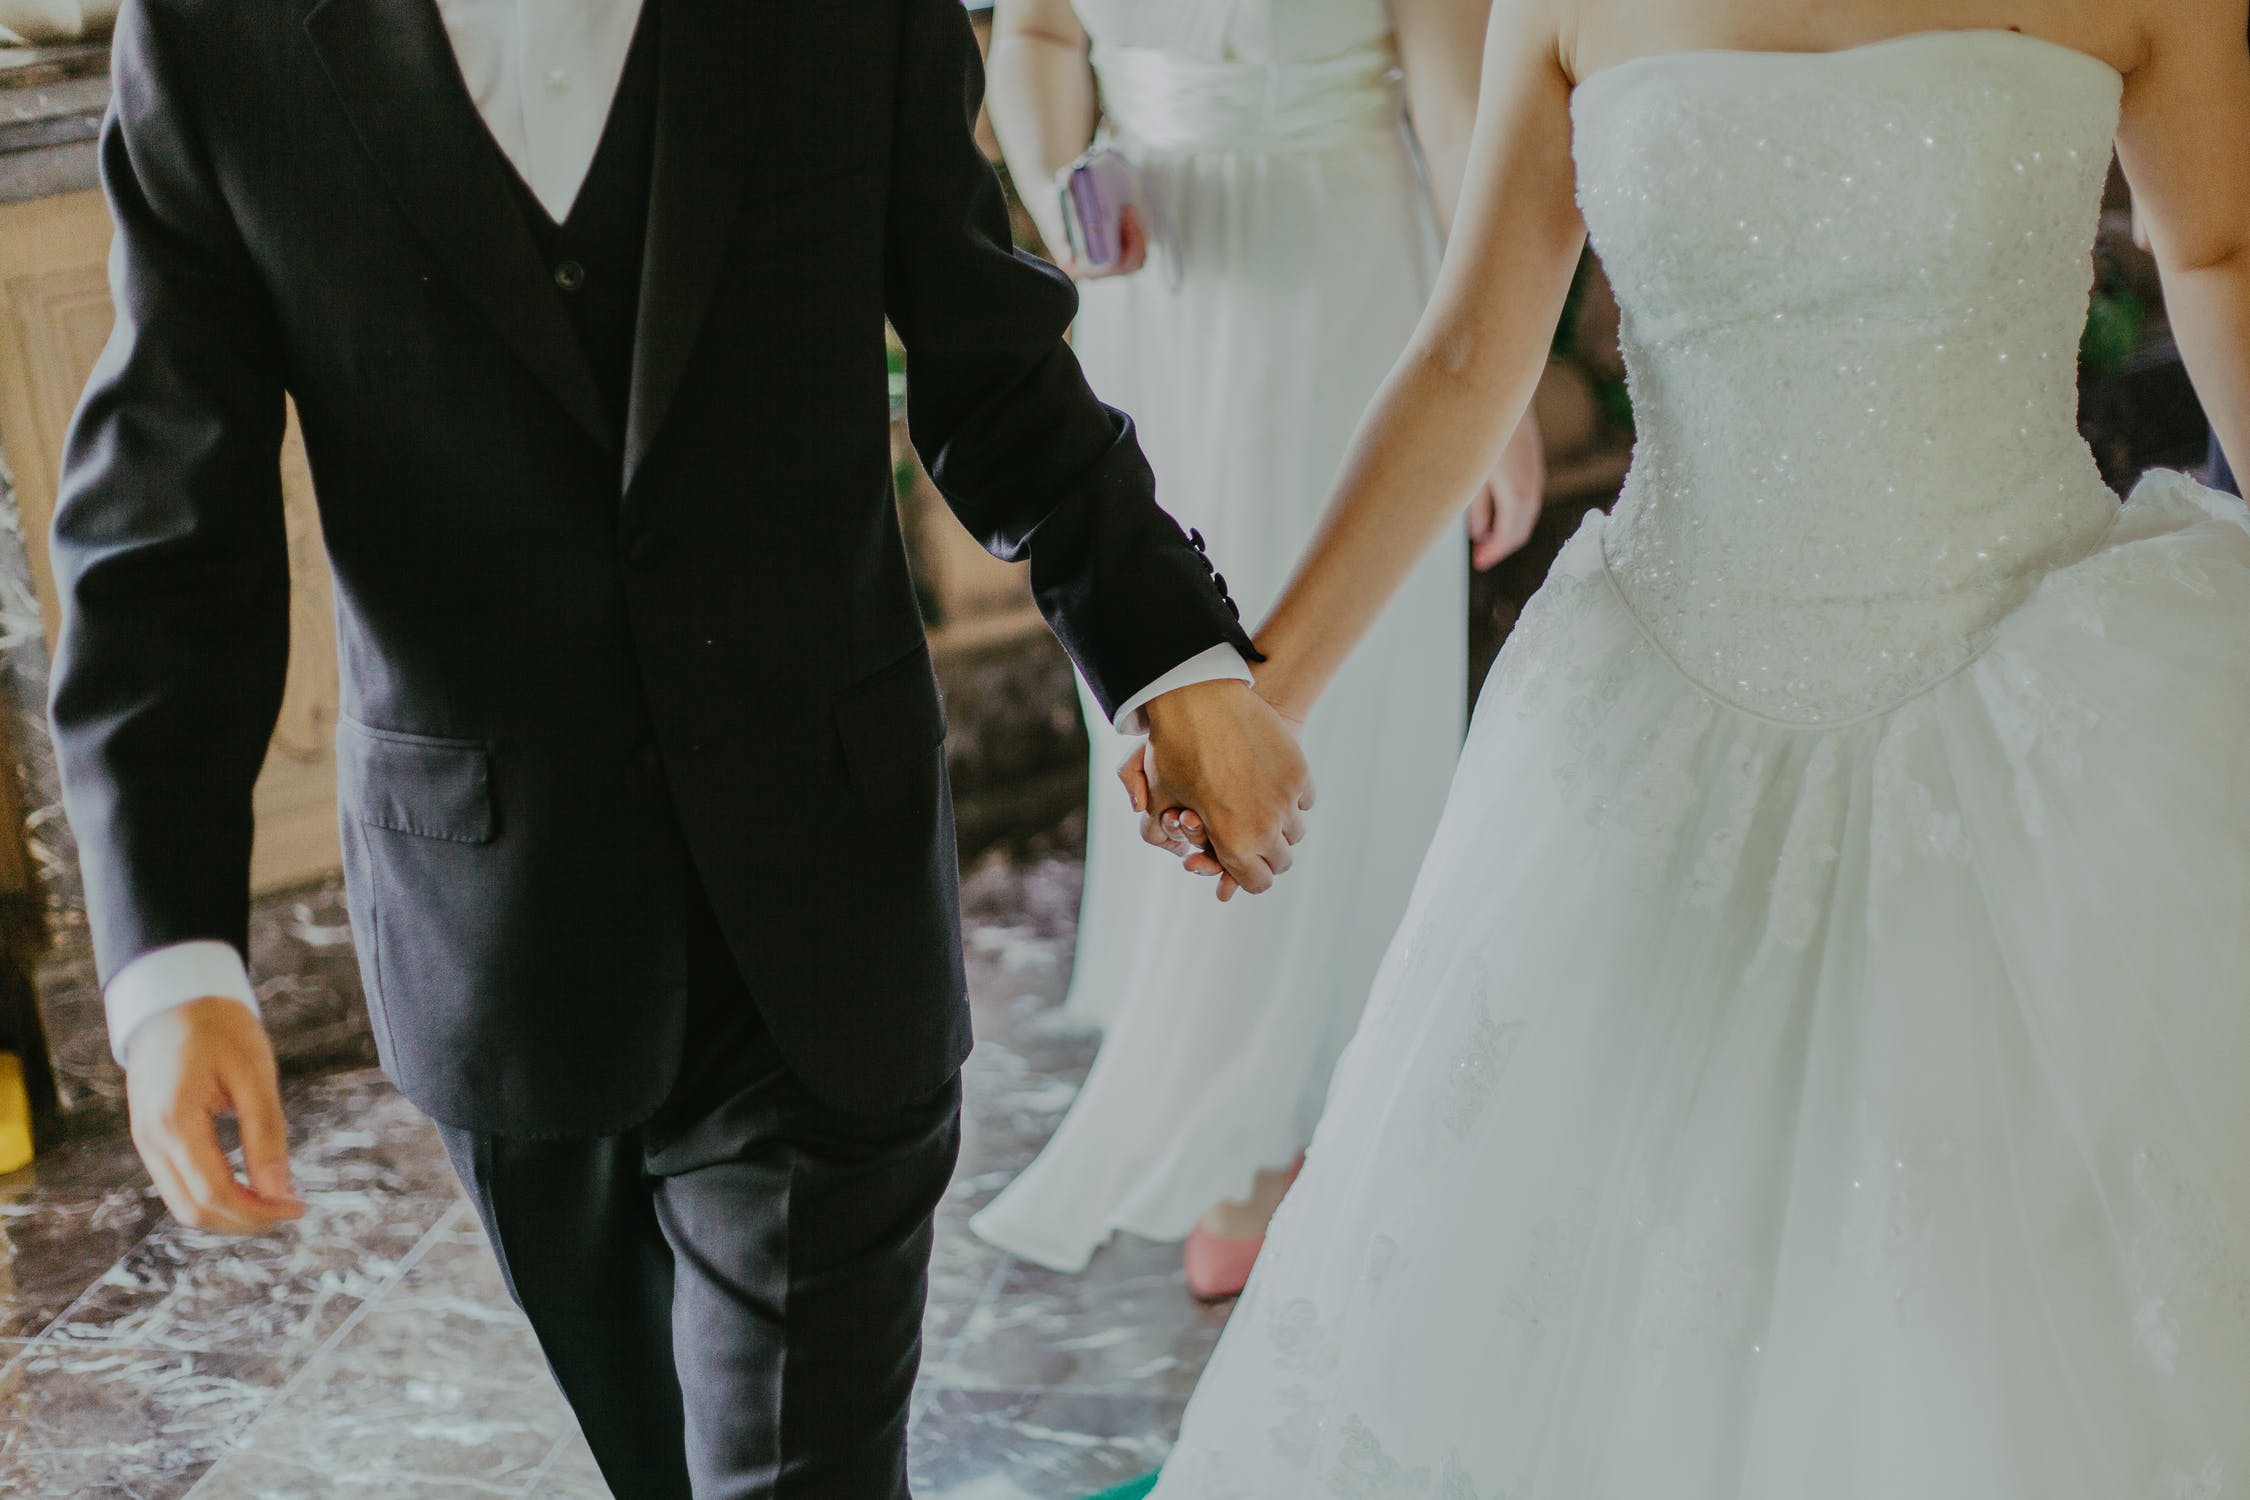 Pareja de novios con sus trajes de boda caminando tomados de las manos. | Foto: Pexels